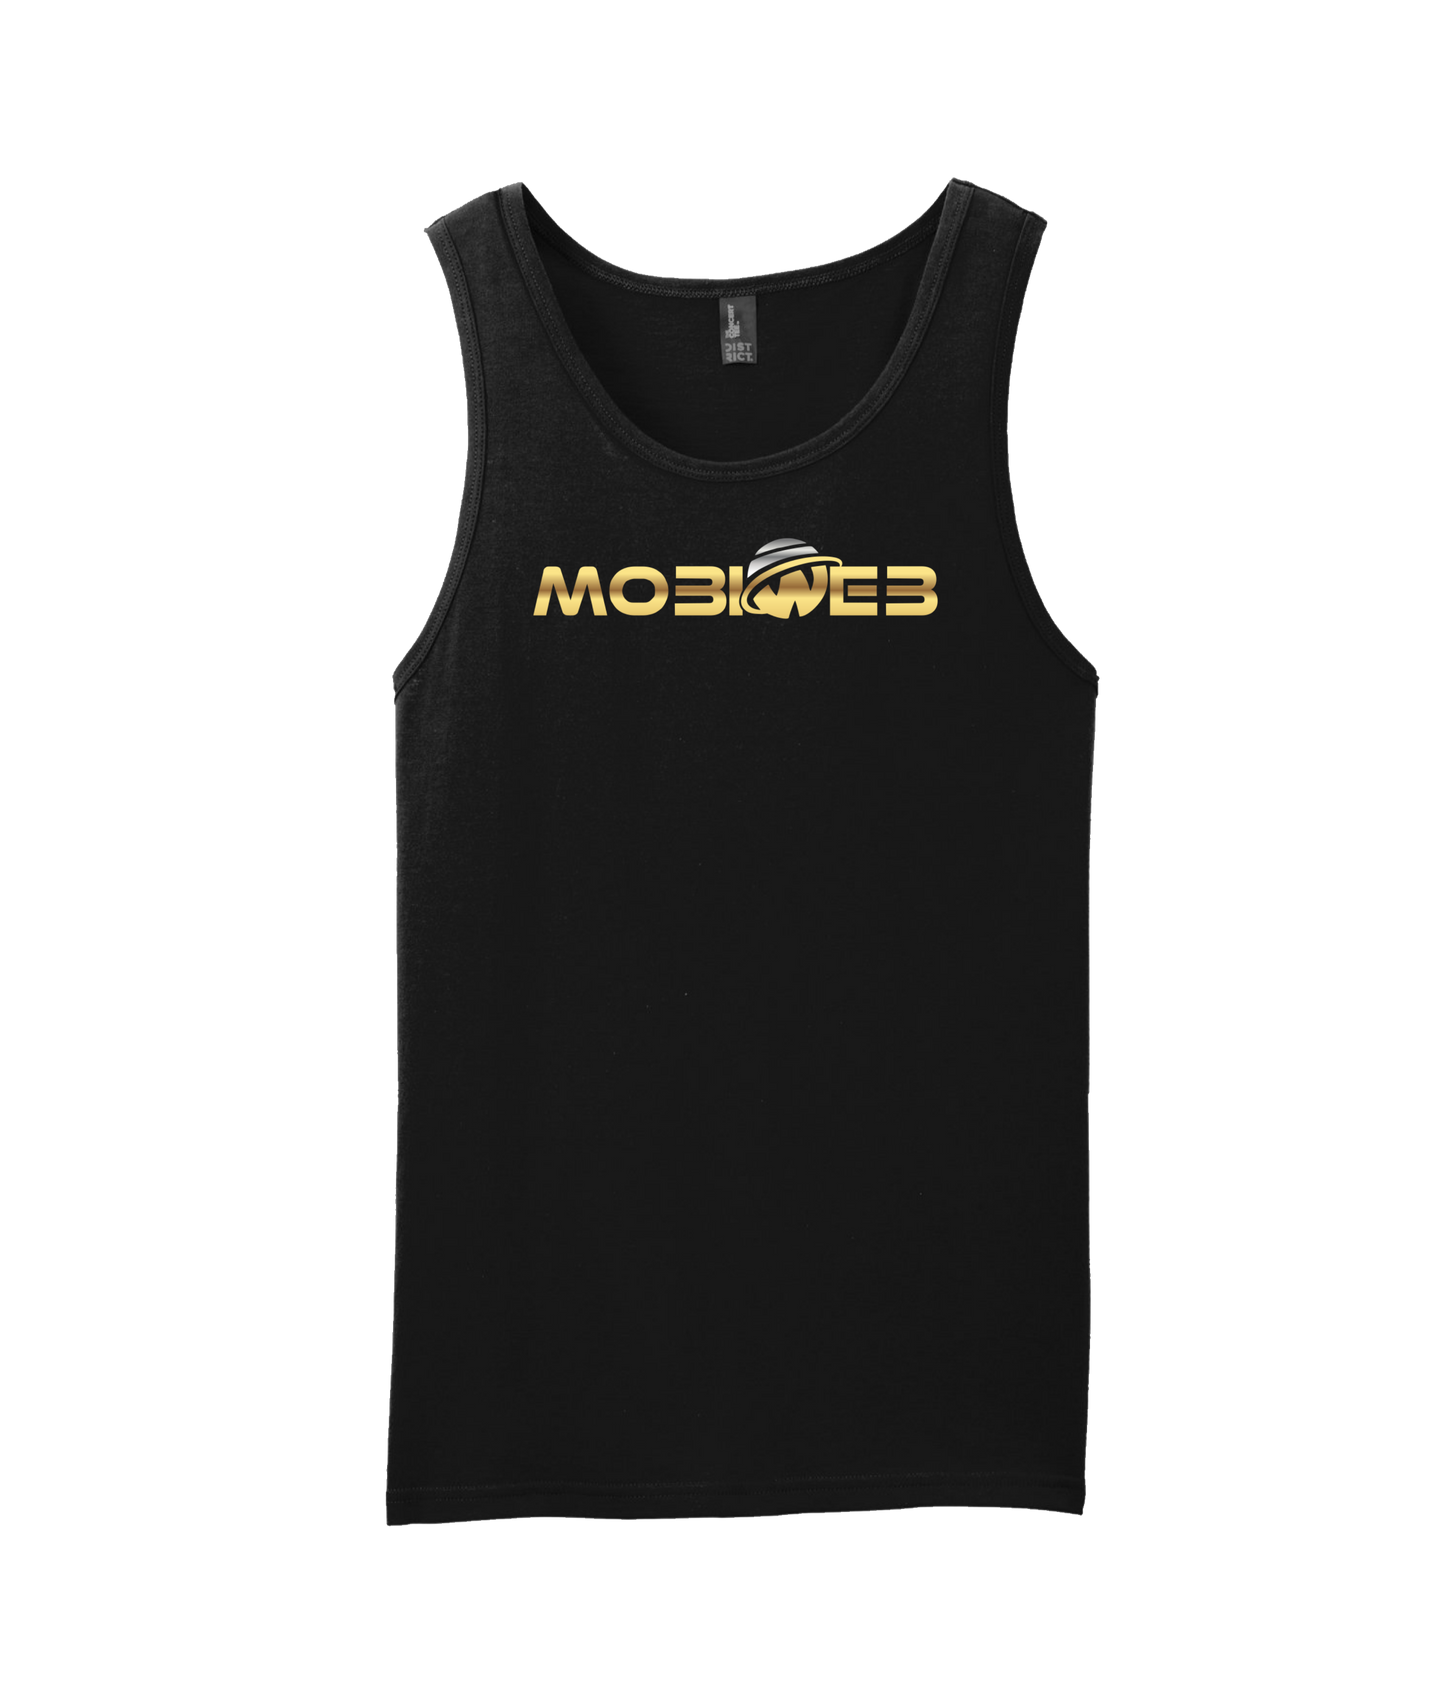 MobiWeb - MobiWeb Gold Logo - Black Tank Top